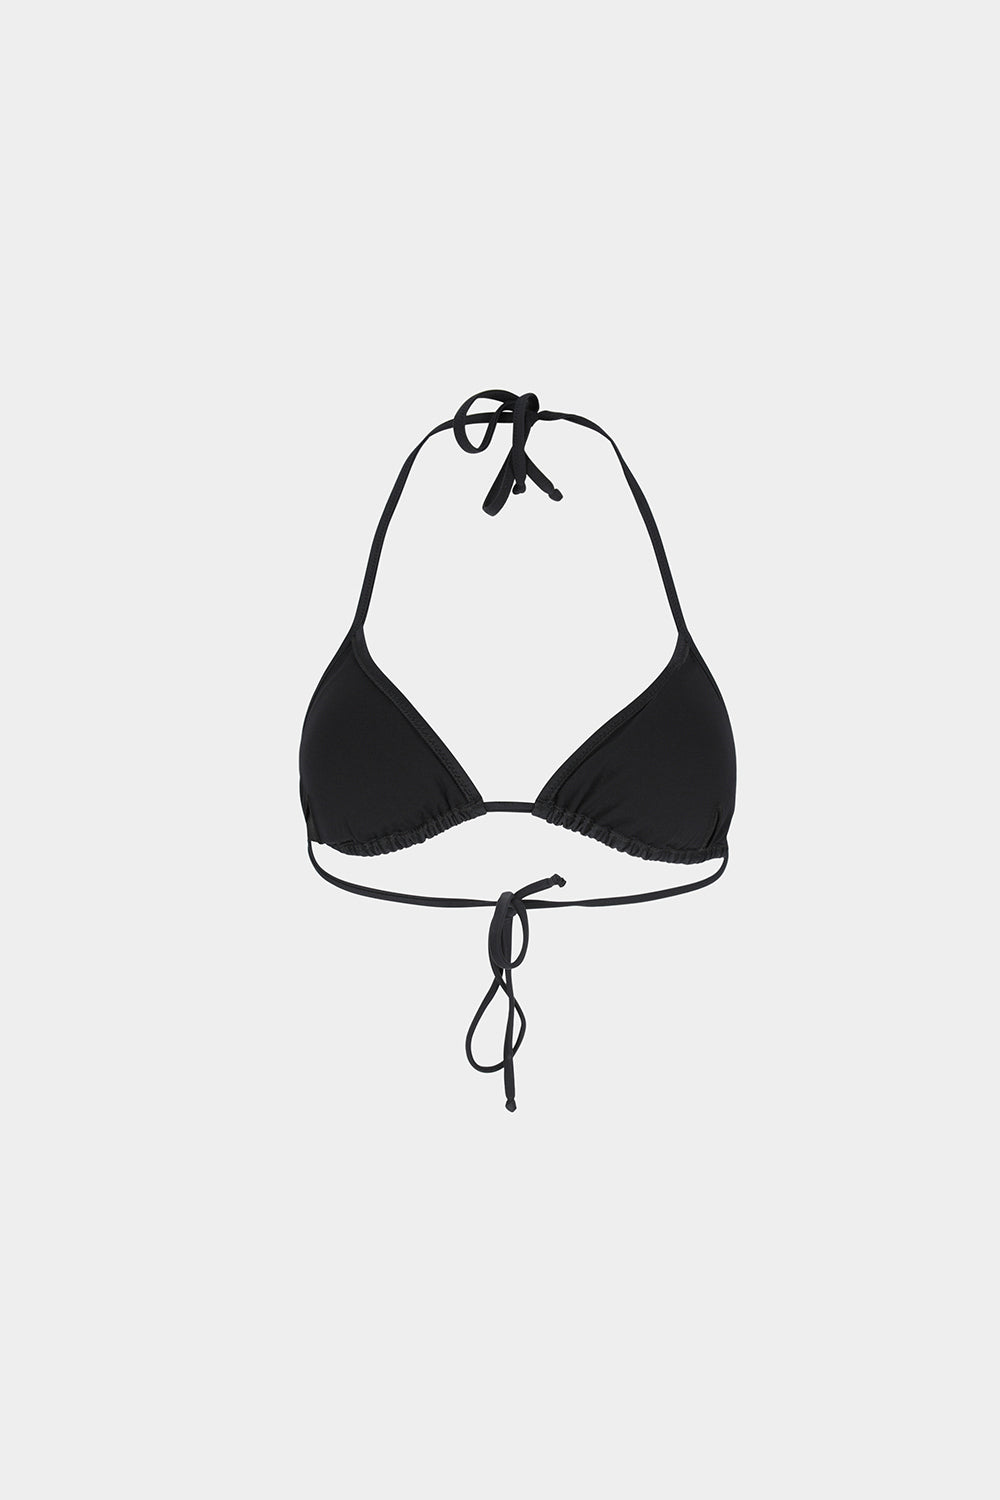 בגד ים לנשים תבליט עיניים CHIARA FERRAGNI Vendome online | ונדום .